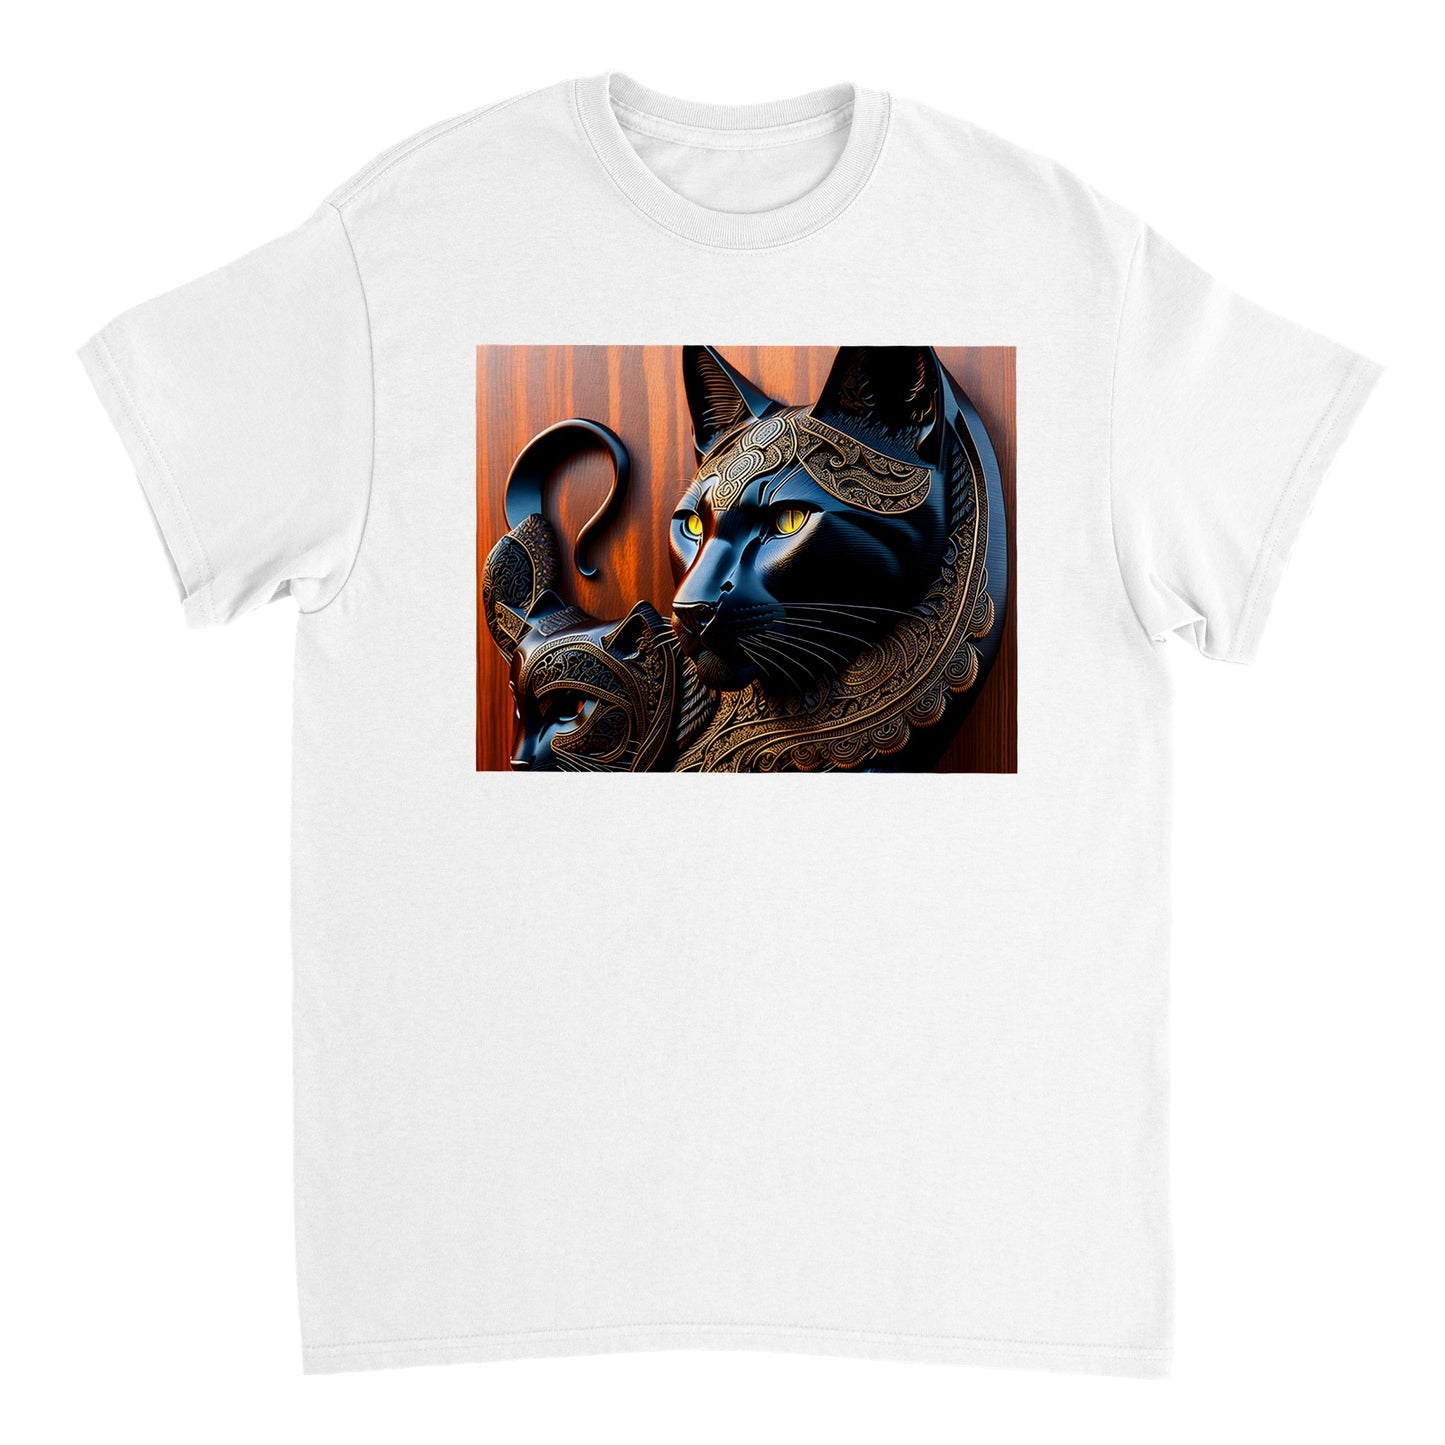 3D Wooden Animal Art - Heavyweight Unisex Crewneck T-shirt 83